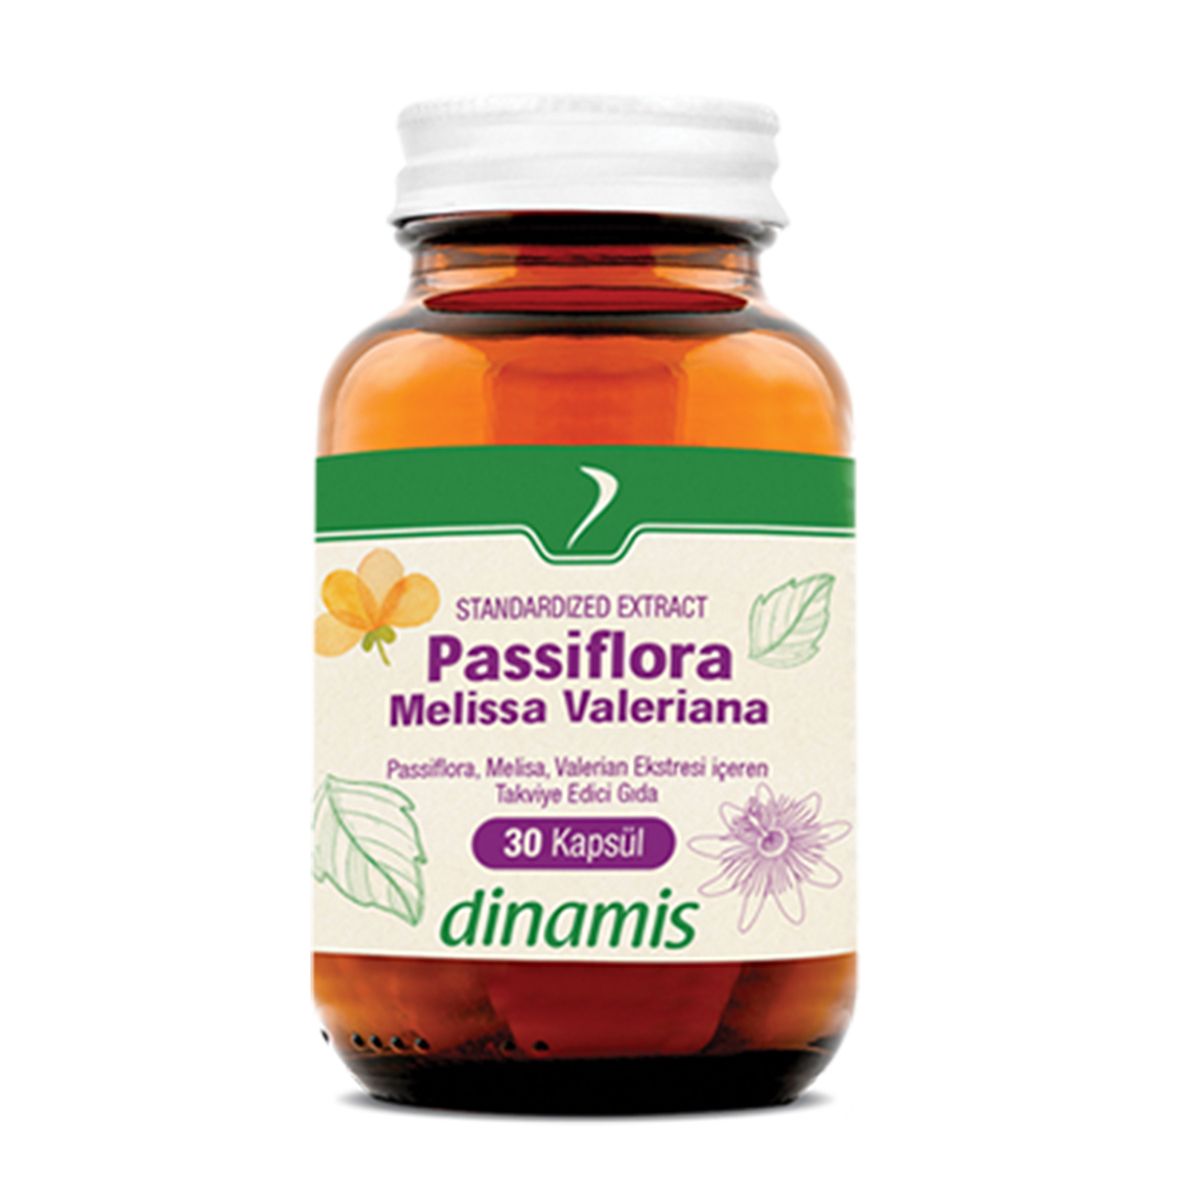 DİNAMİS Dinamis Passiflora Melissa Valeriana 30 Kapsül